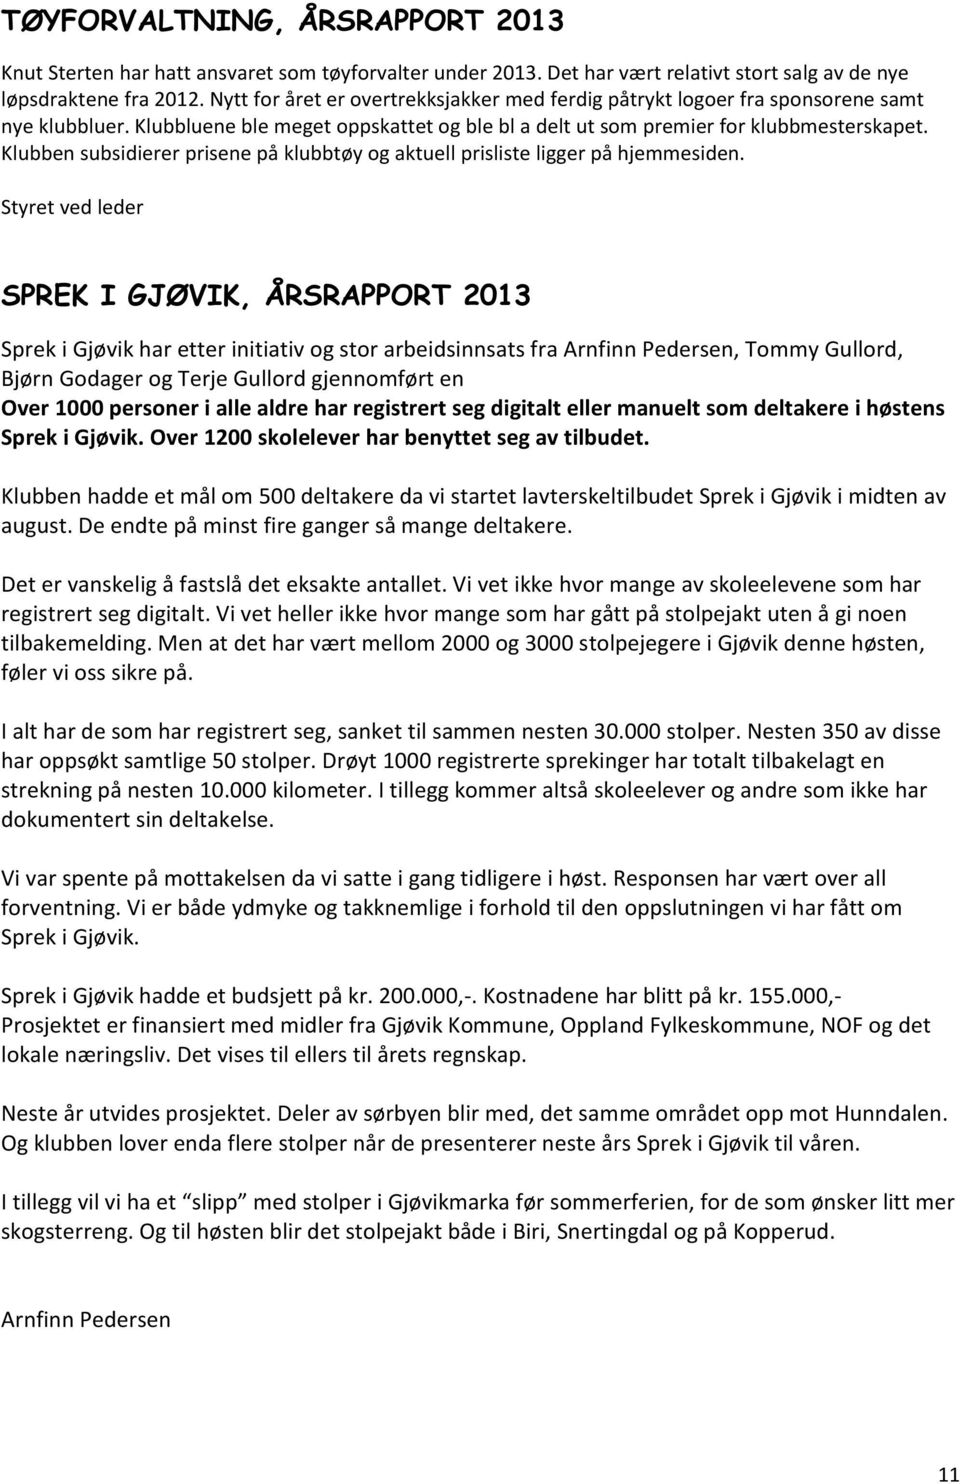 Klubben subsidierer prisene på klubbtøy og aktuell prisliste ligger på hjemmesiden.